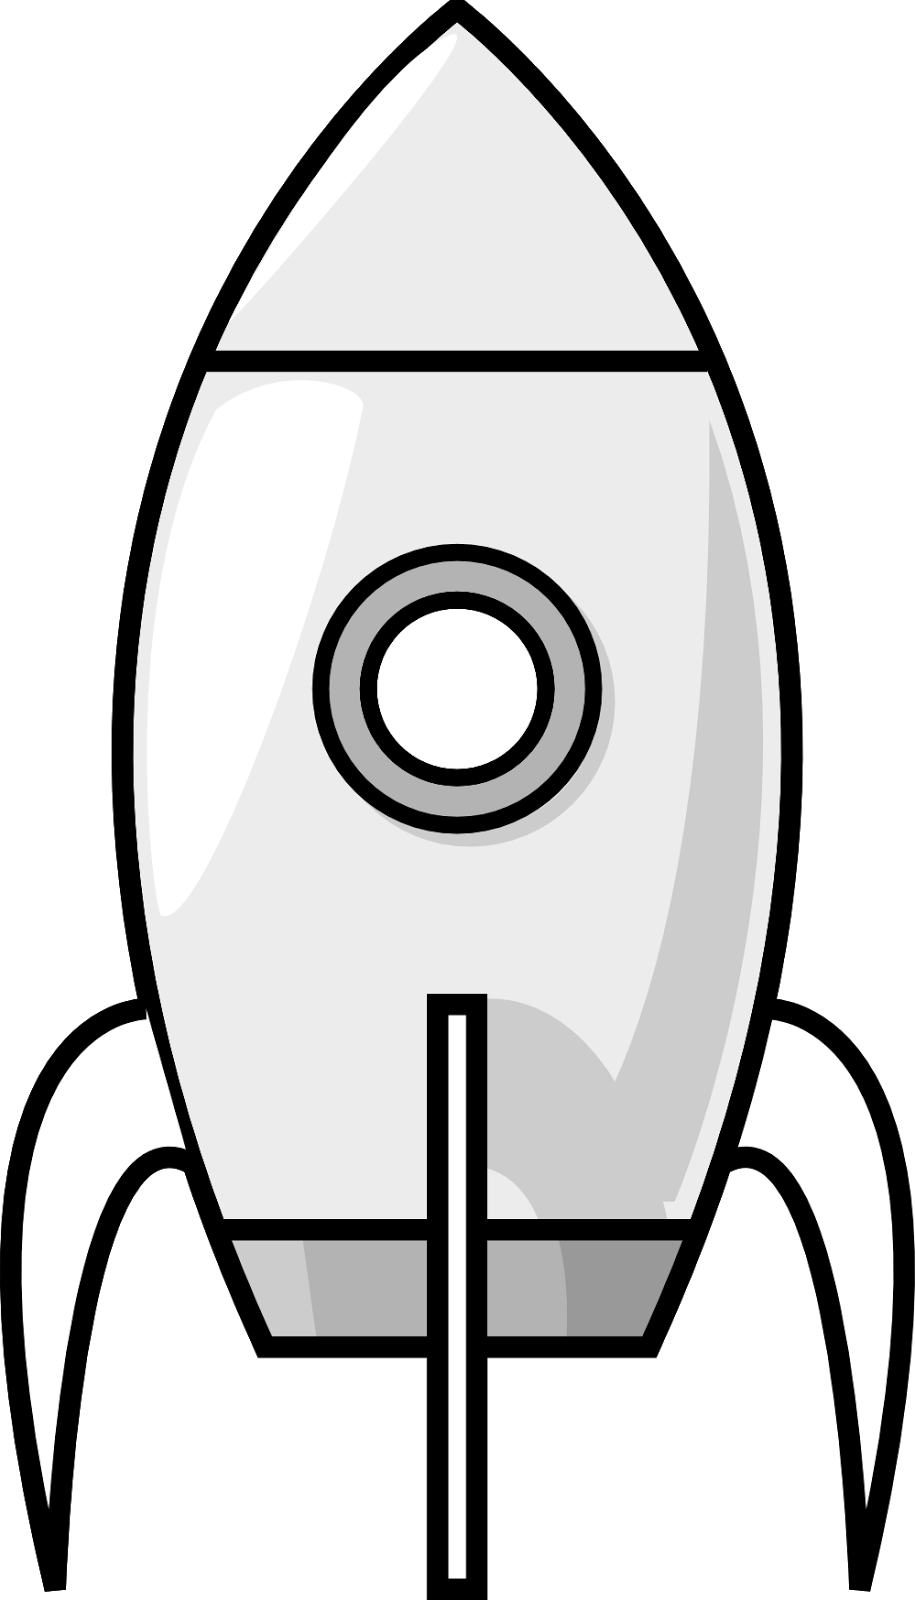 Simplified Rocket Vector Art PNG